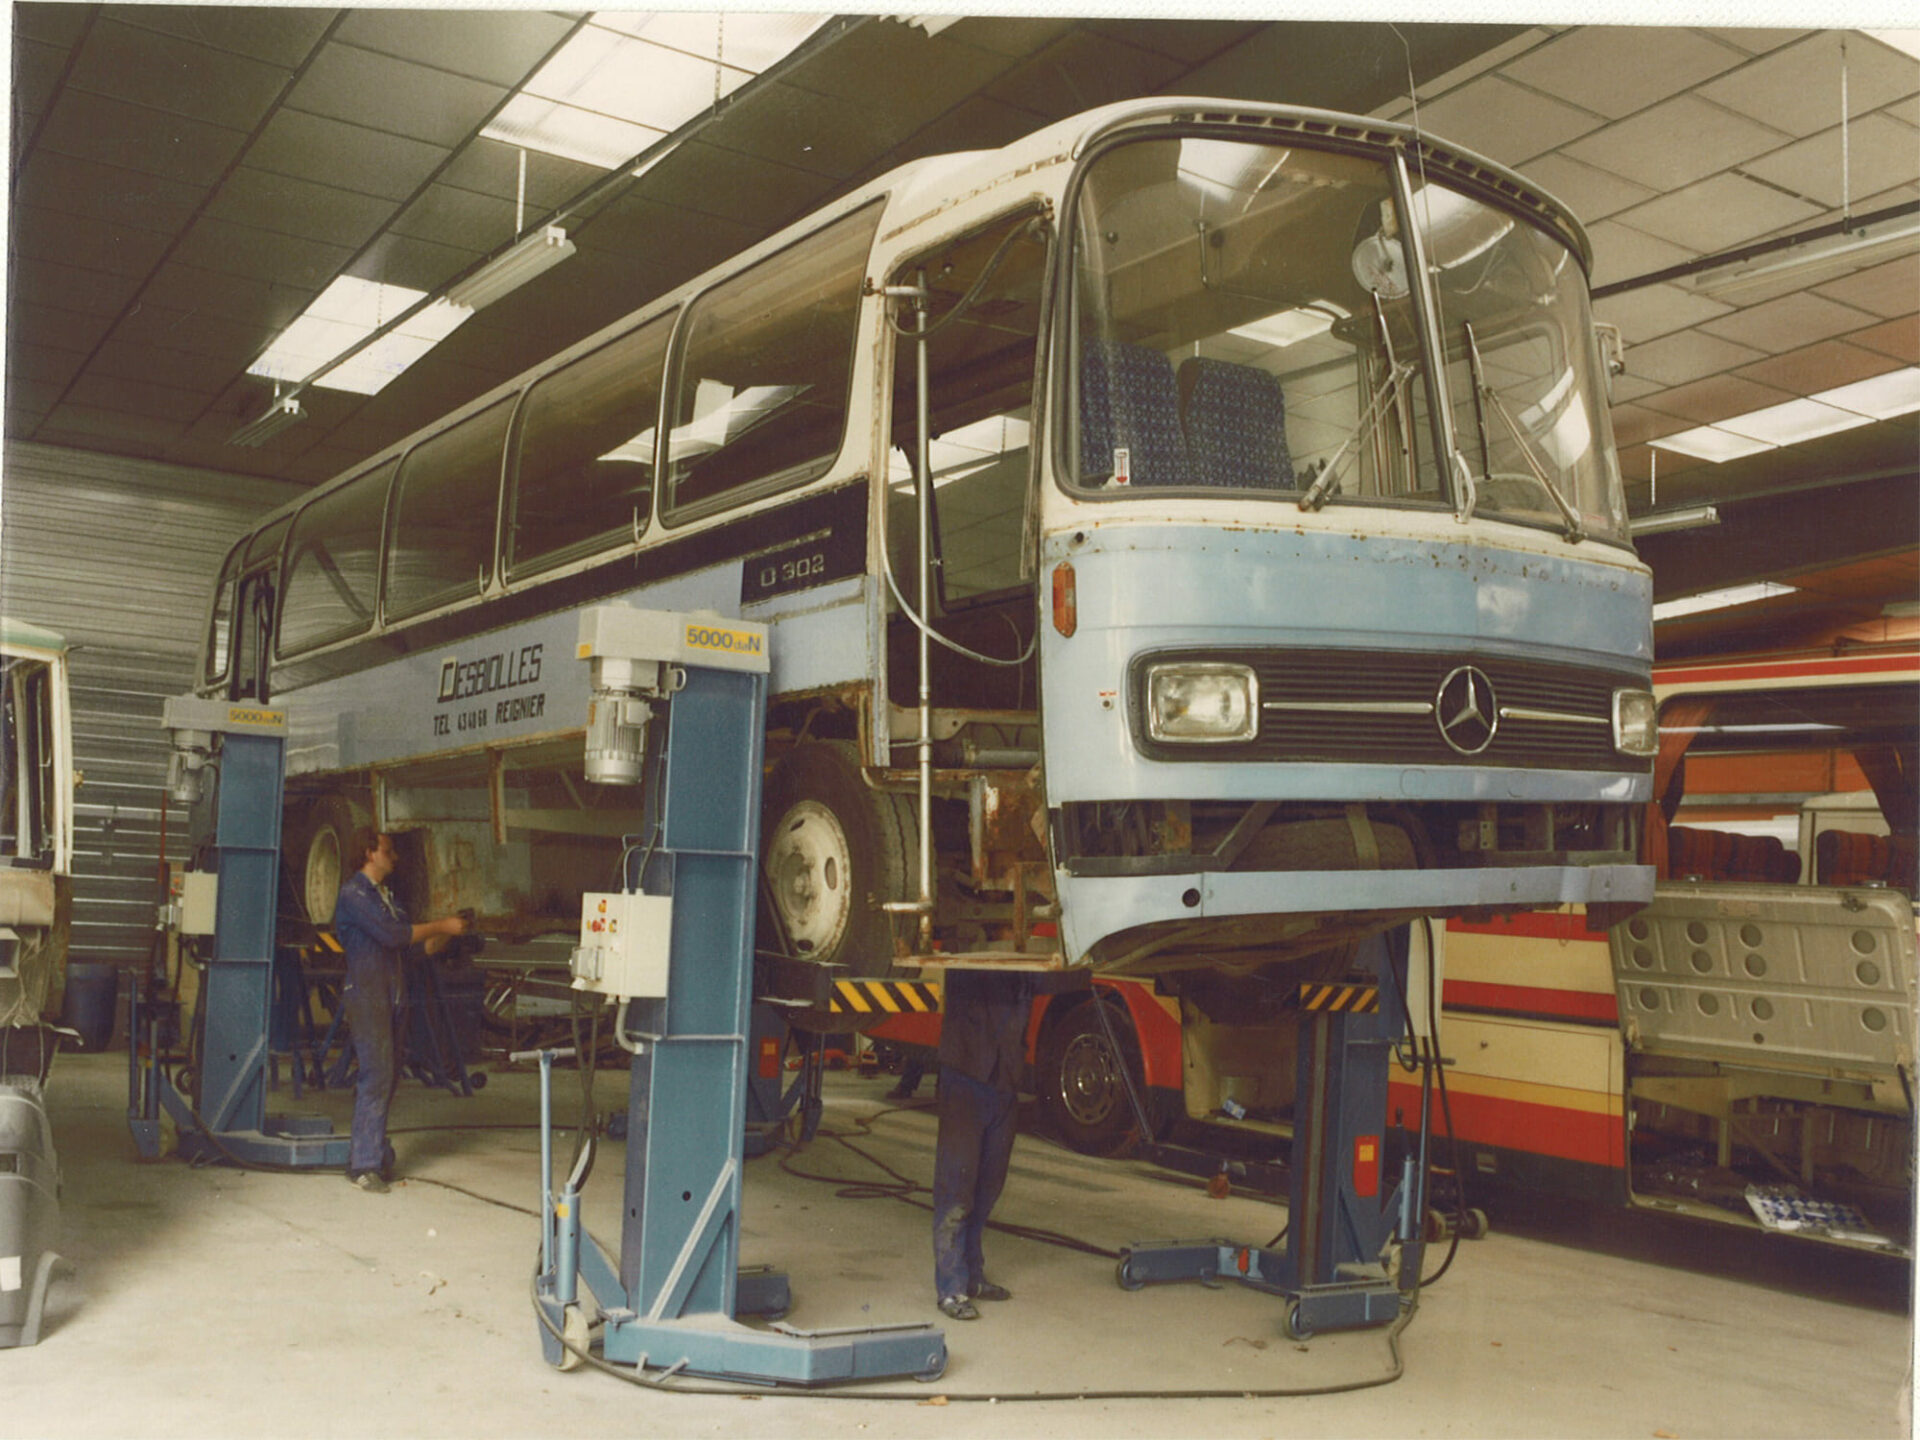 Bus de 1981 dans un atelier de réparation